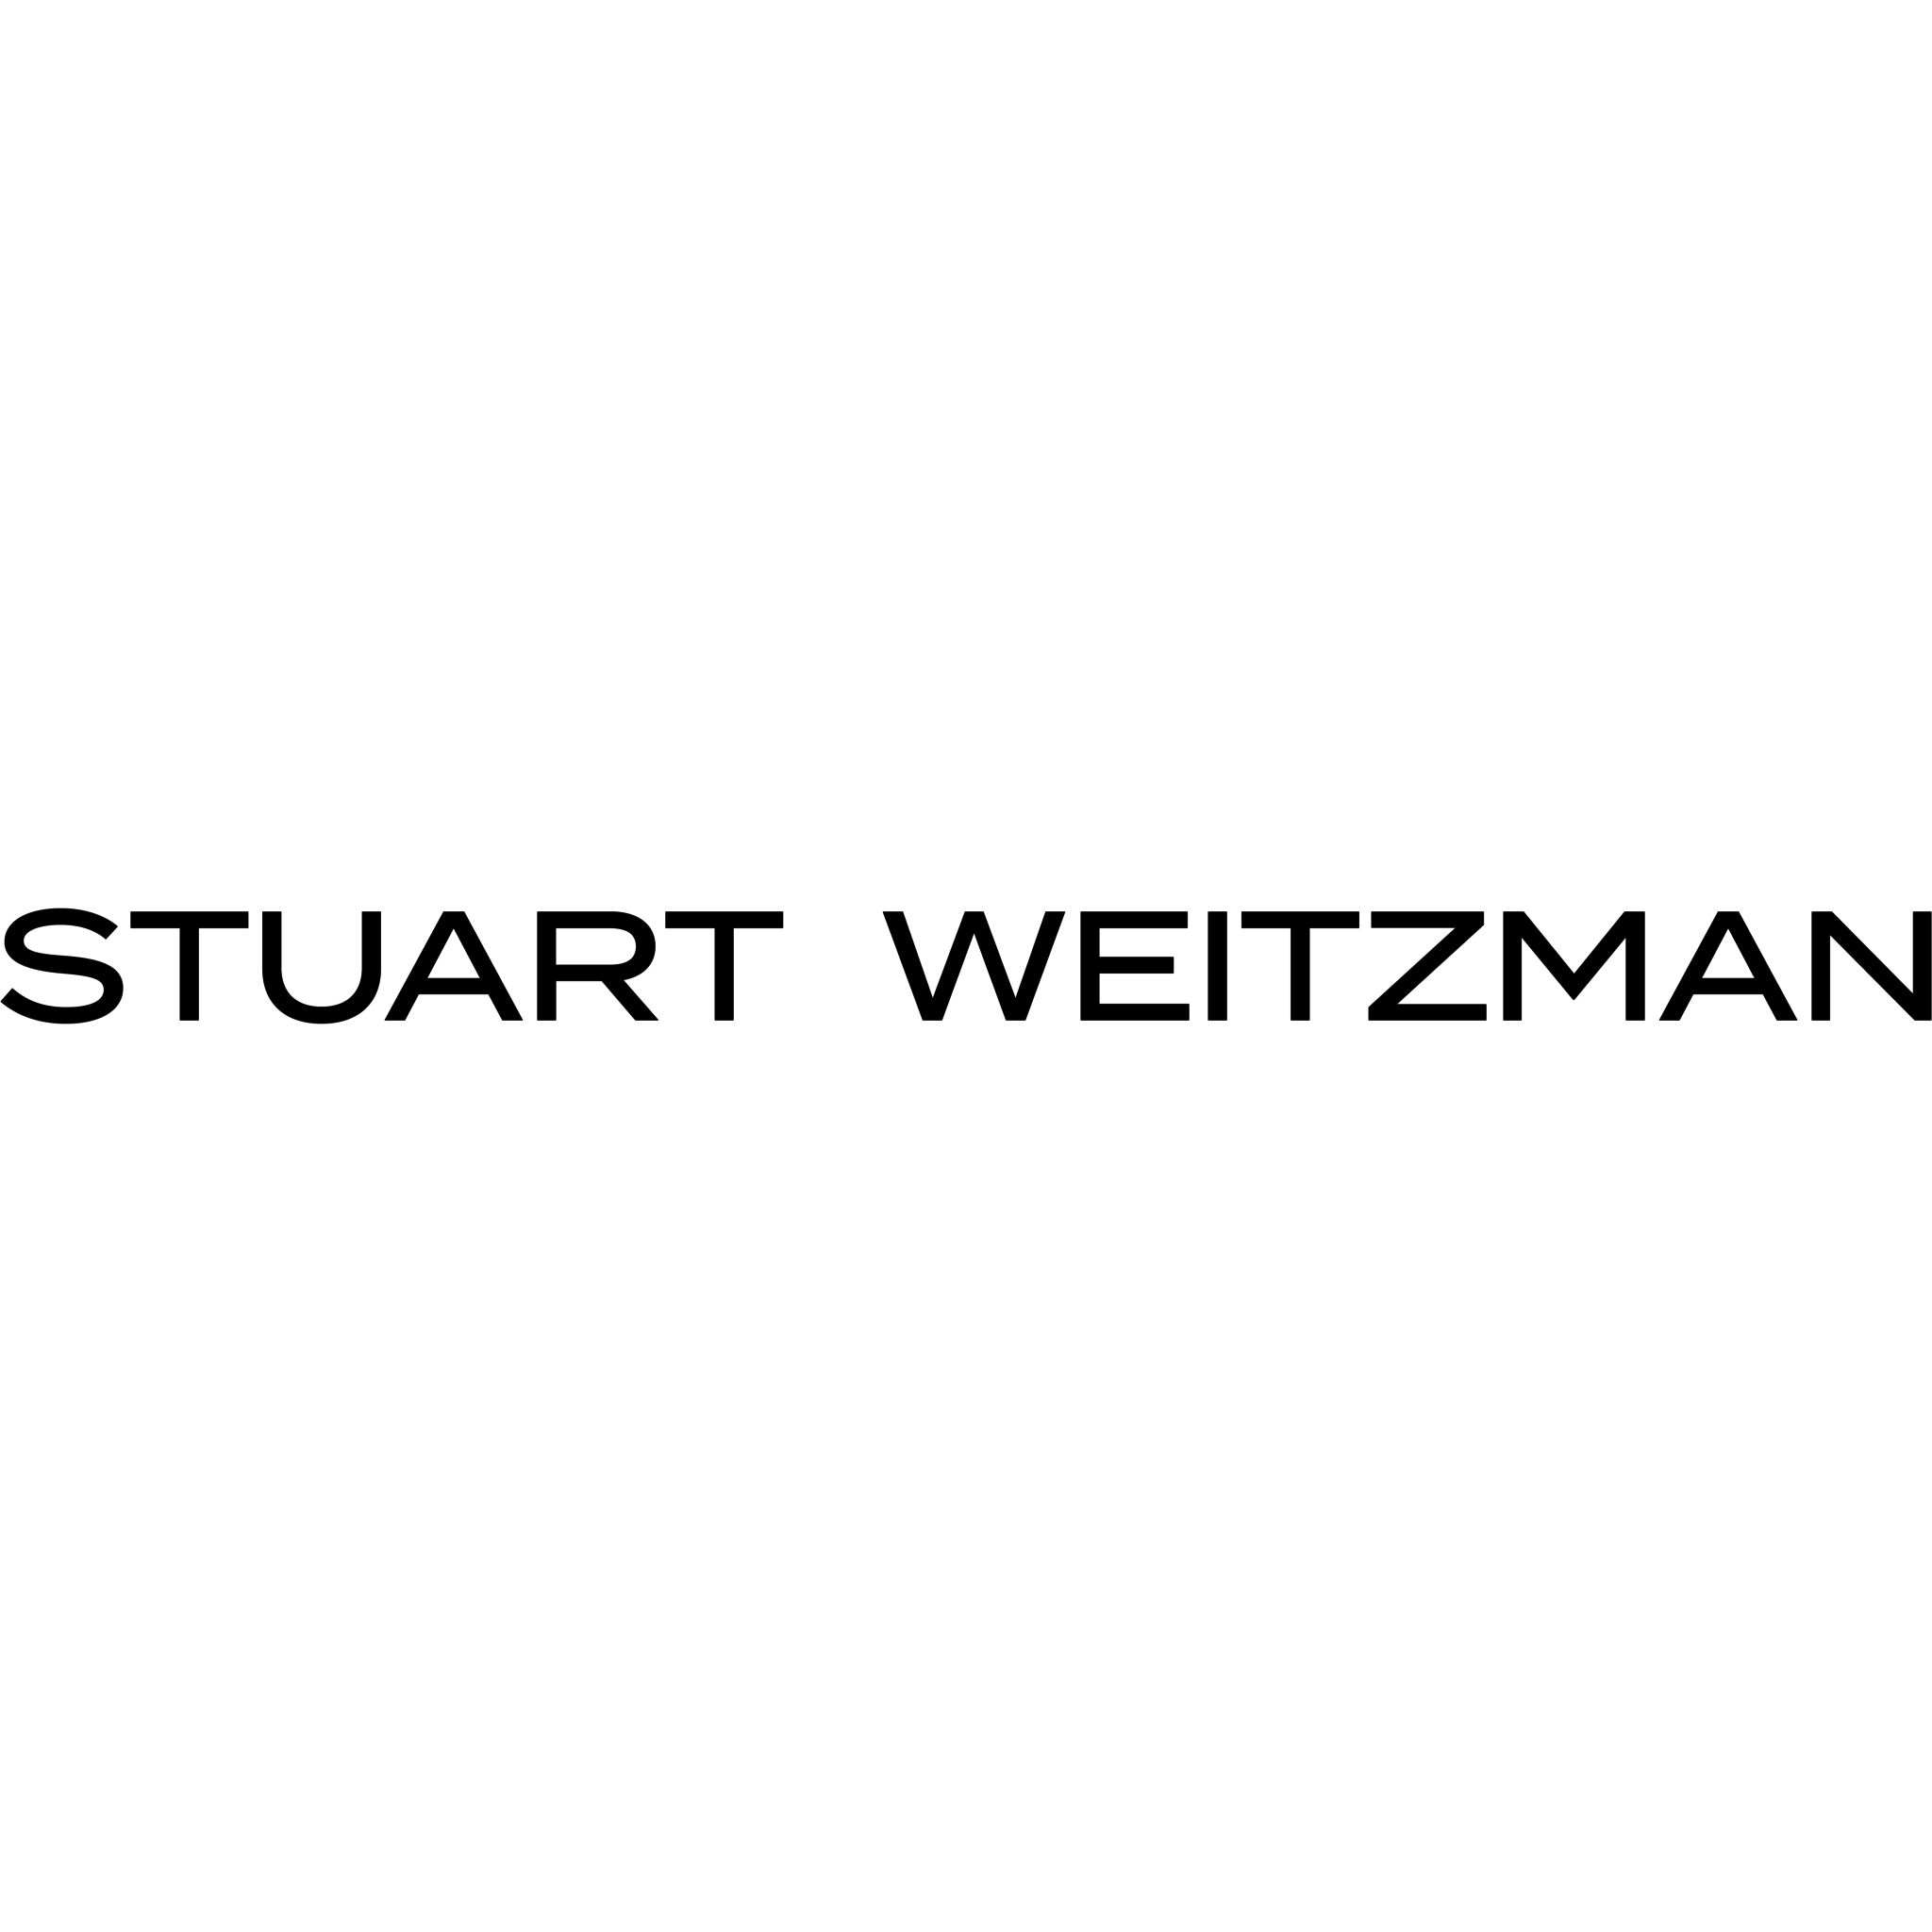 Stuart Weitzman - Grossistes et fabricants de vêtements